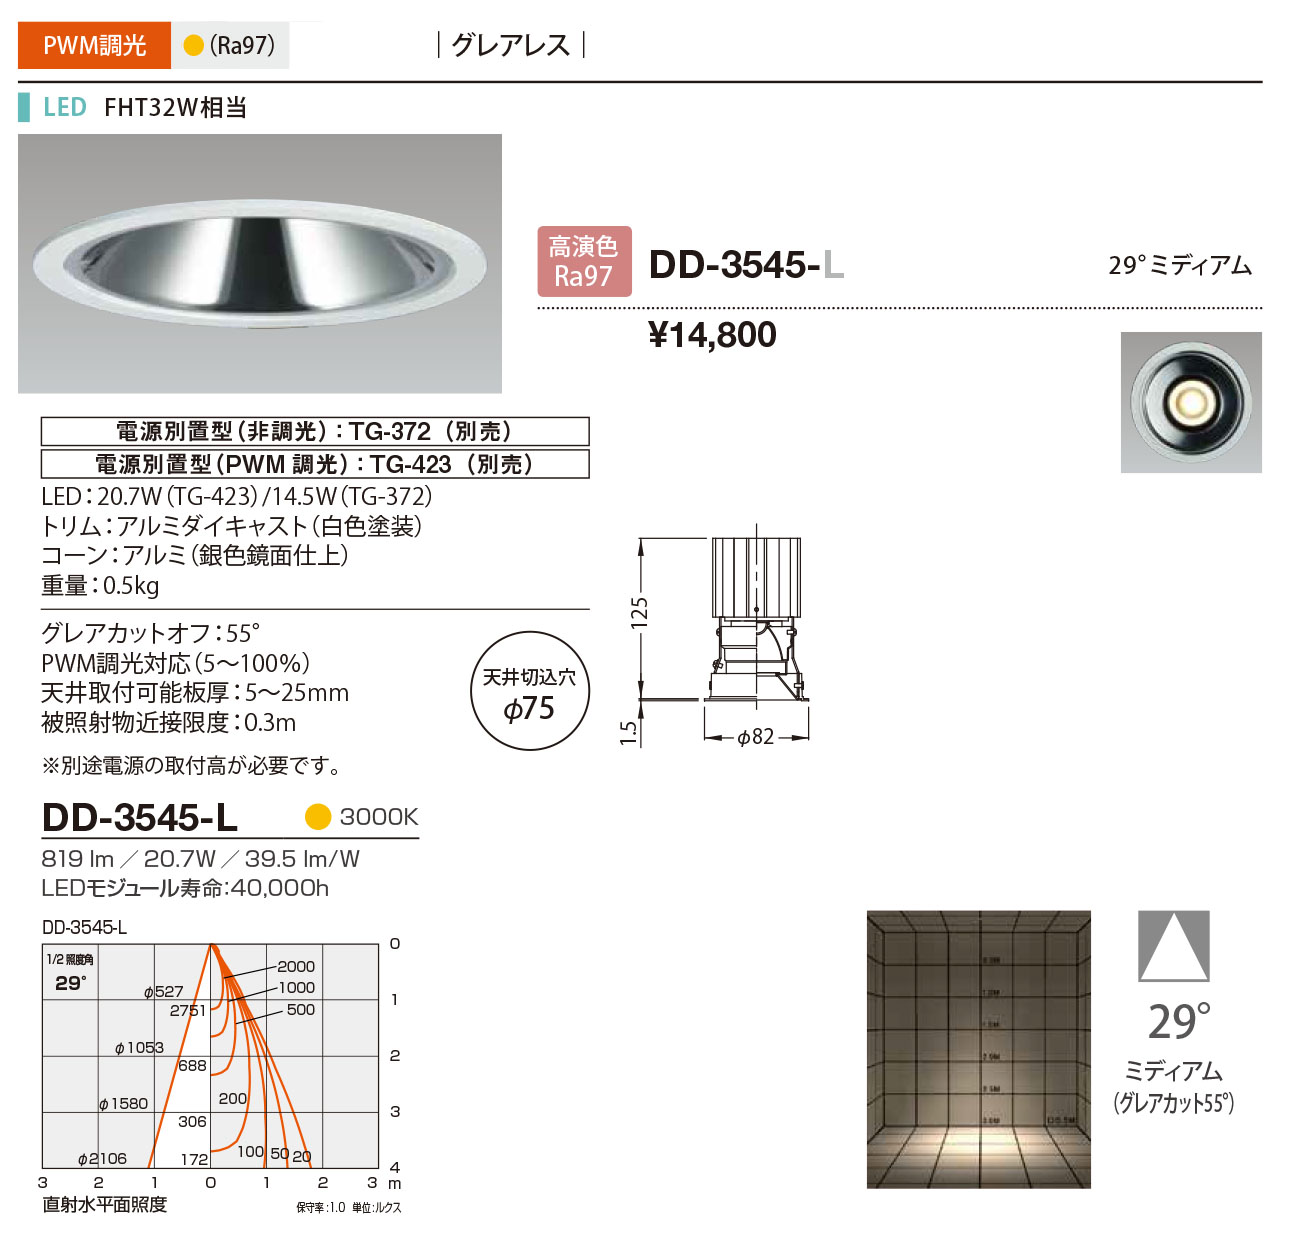 DD-3545-L RcƖ _ECg F 75 LED dF  29x